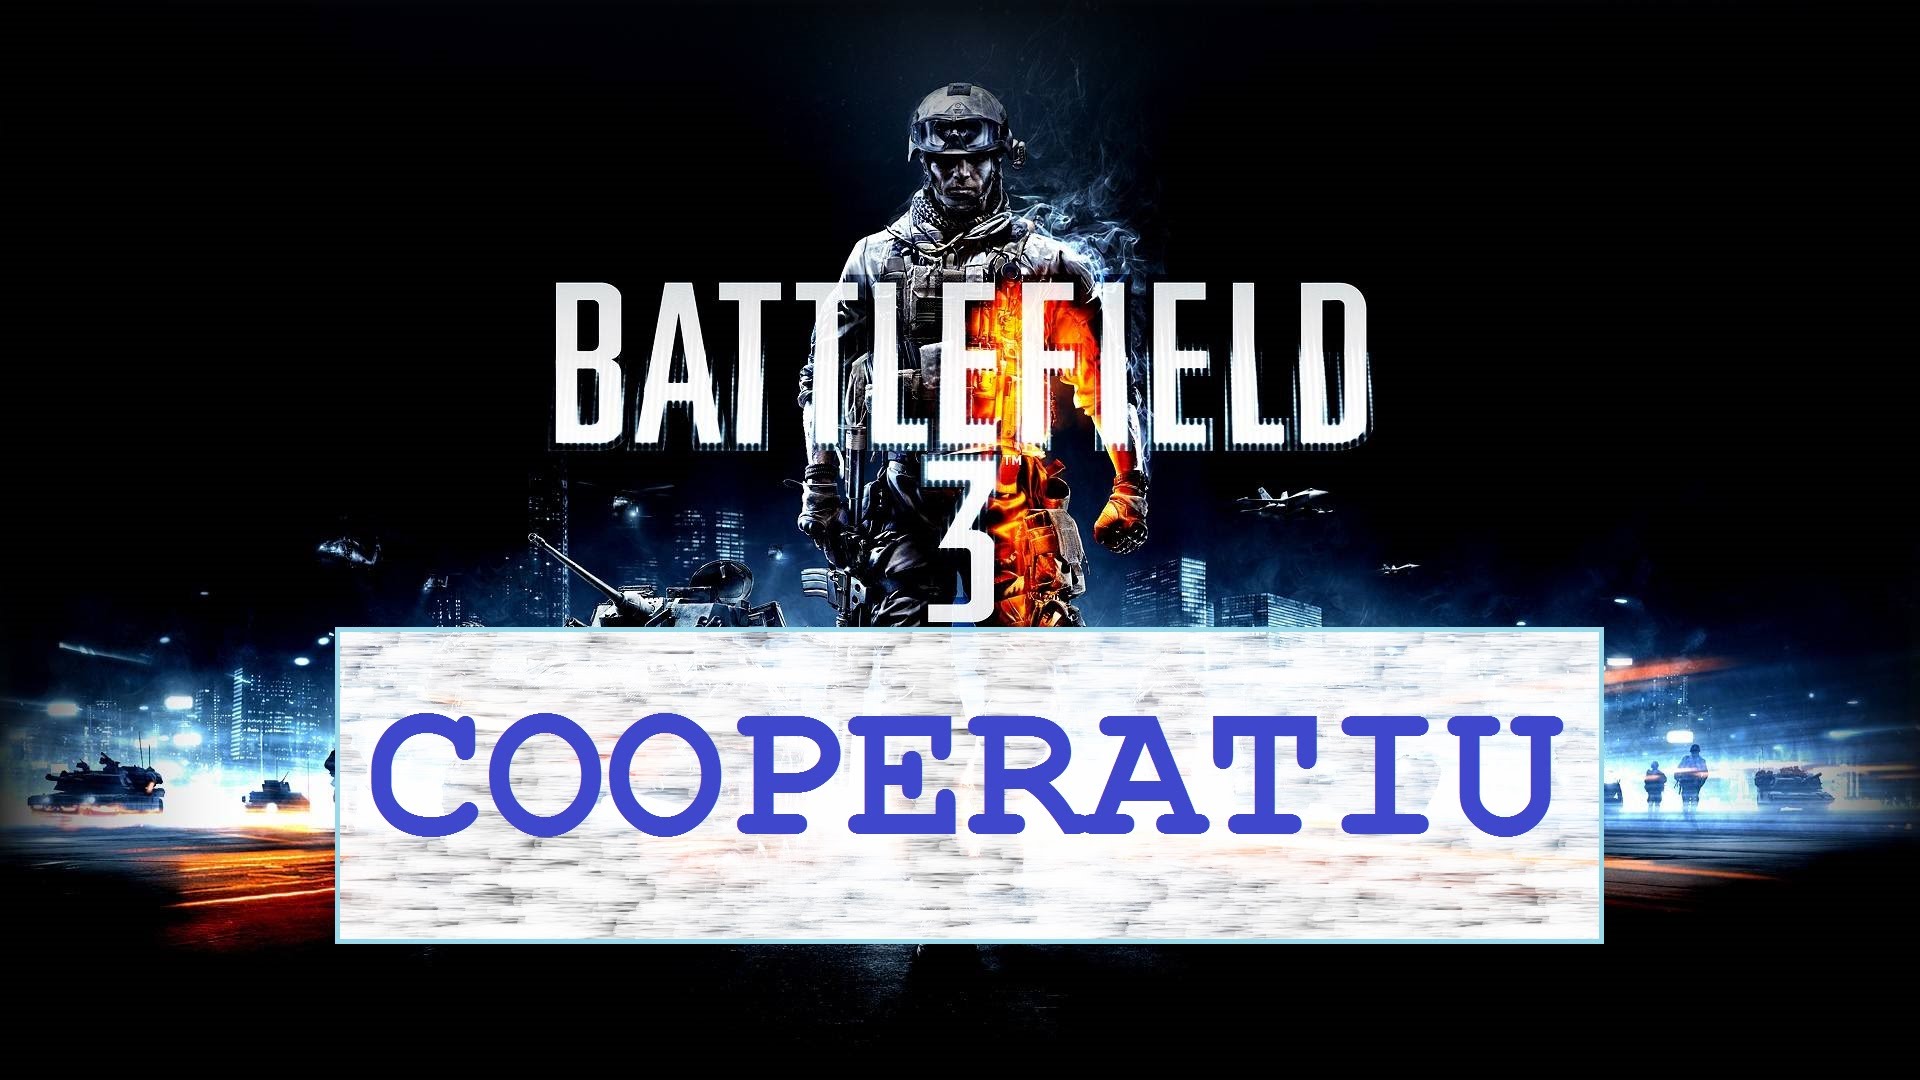 Battlefield 3 - Cooperatiu - 4a Missió de Nil66